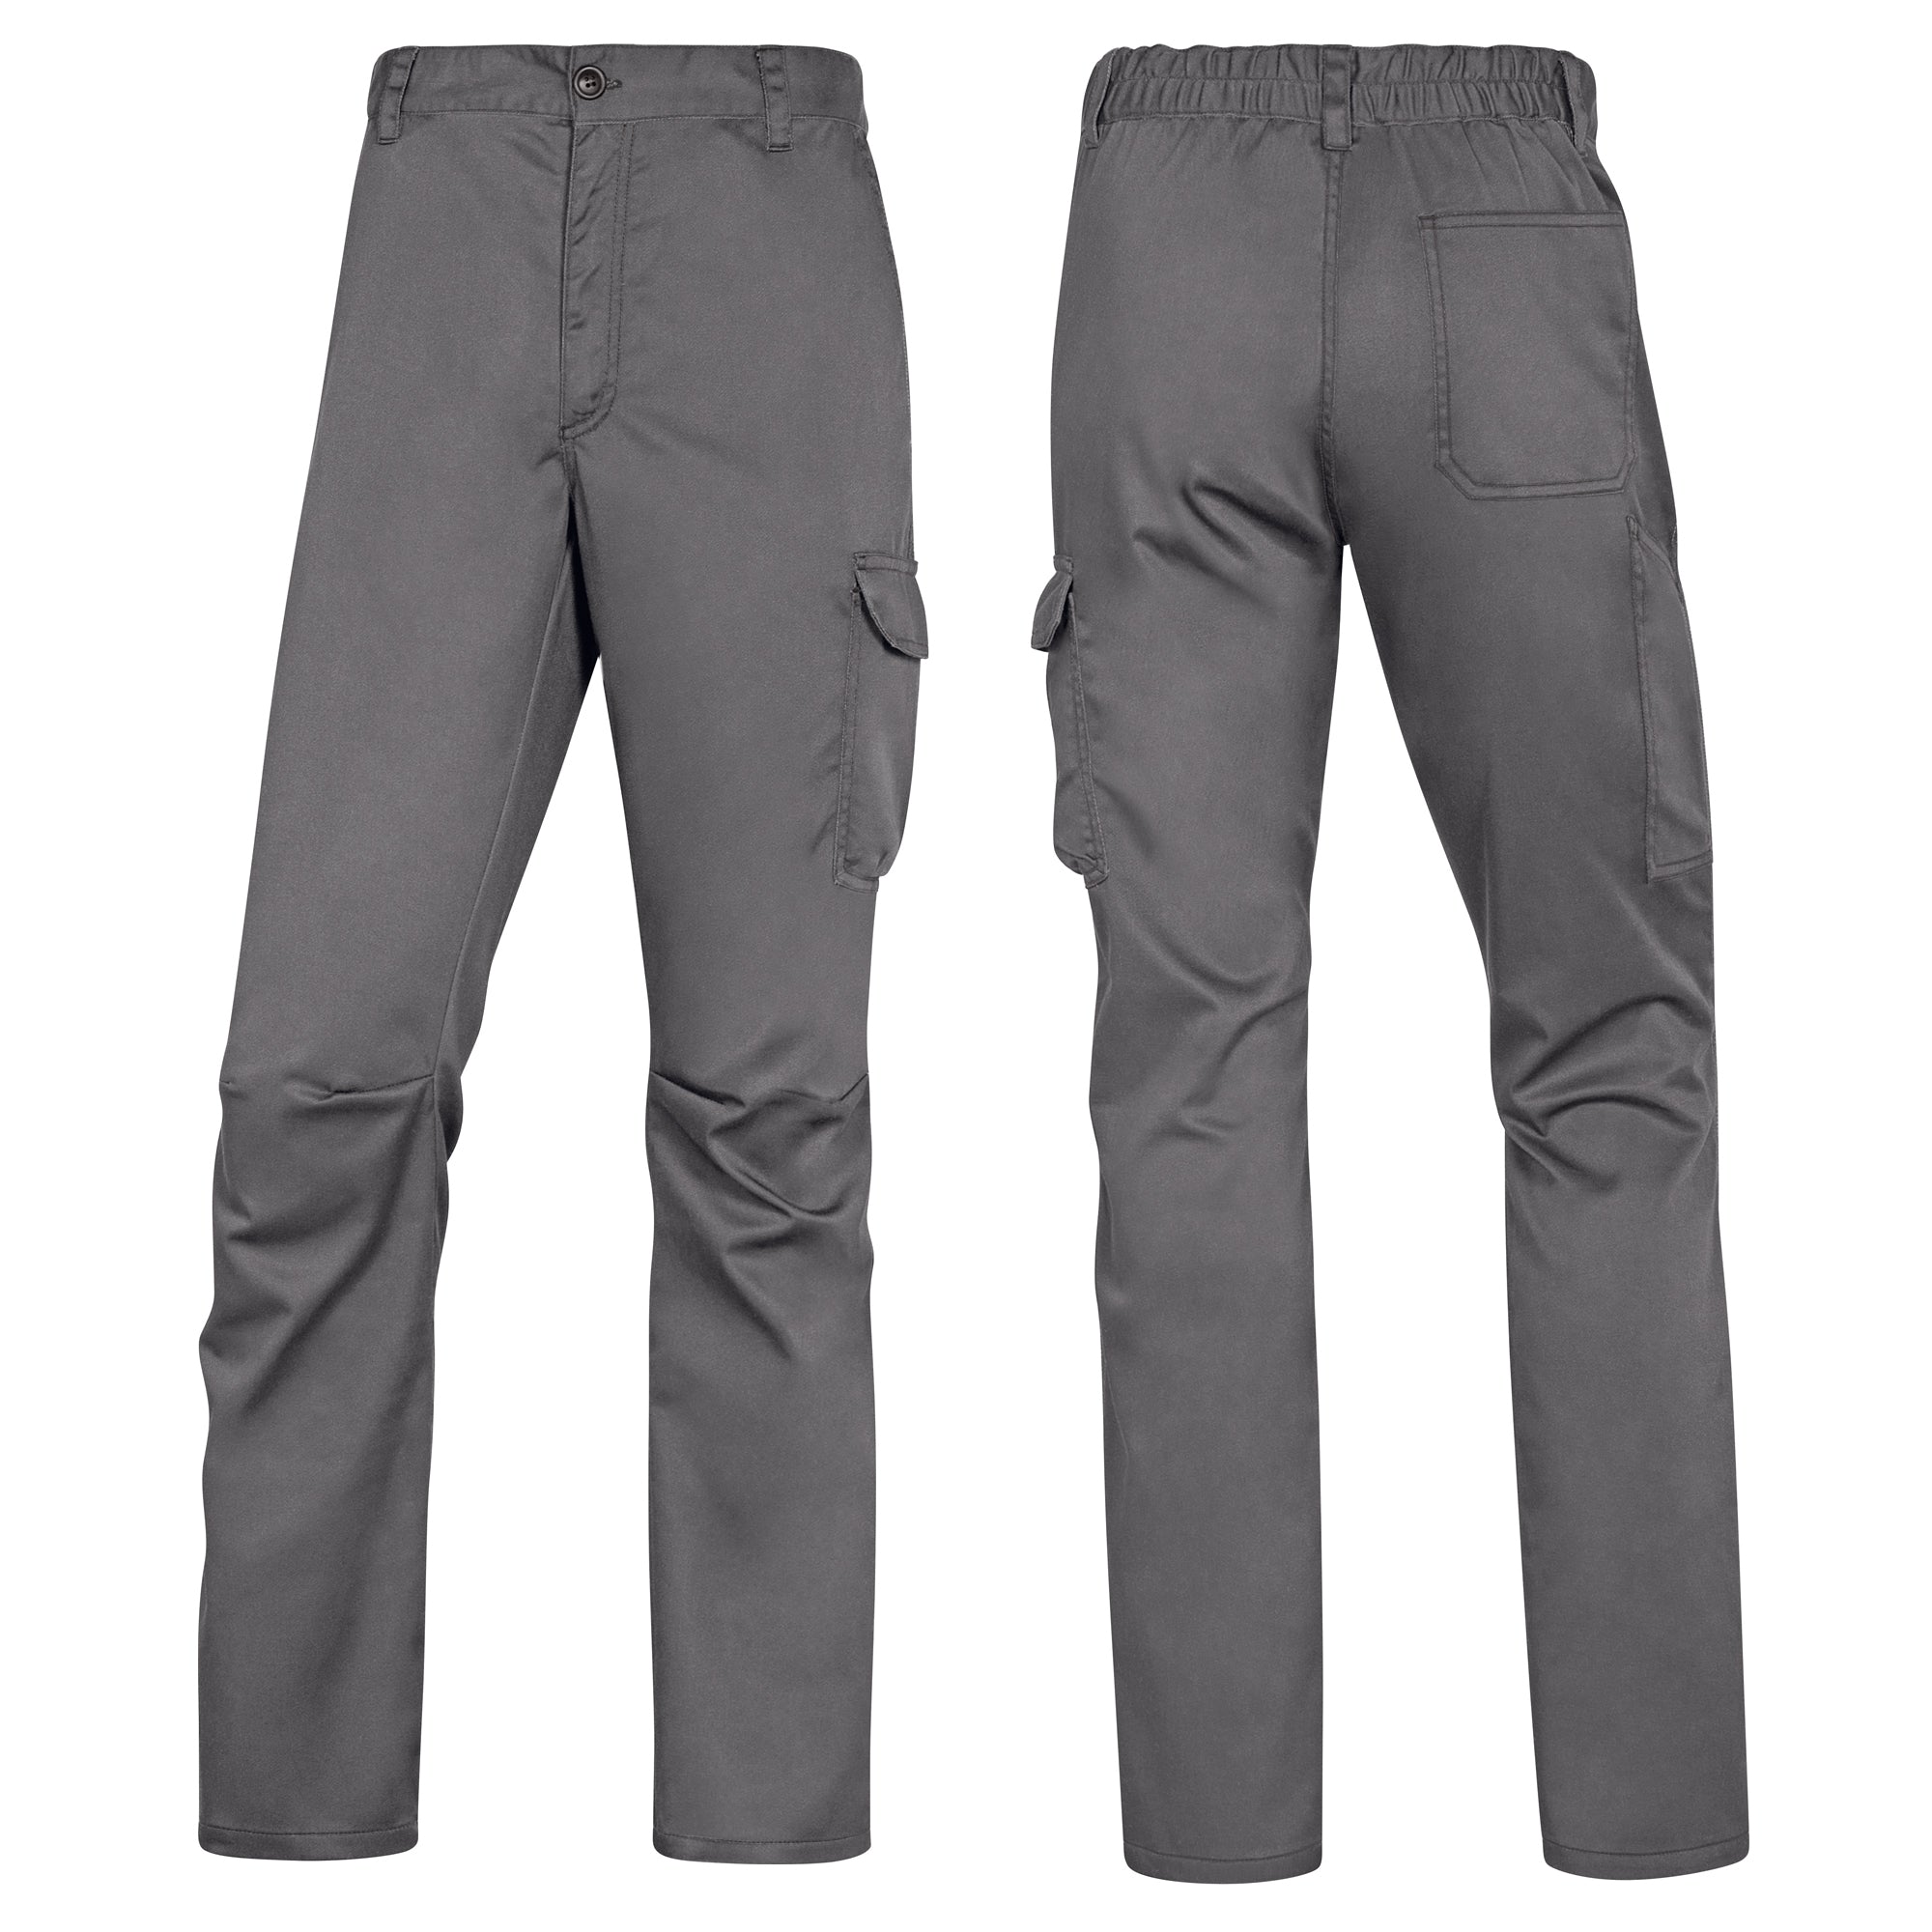 deltaplus-pantalone-lavoro-panostrpa-tg-xl-grigio-nero